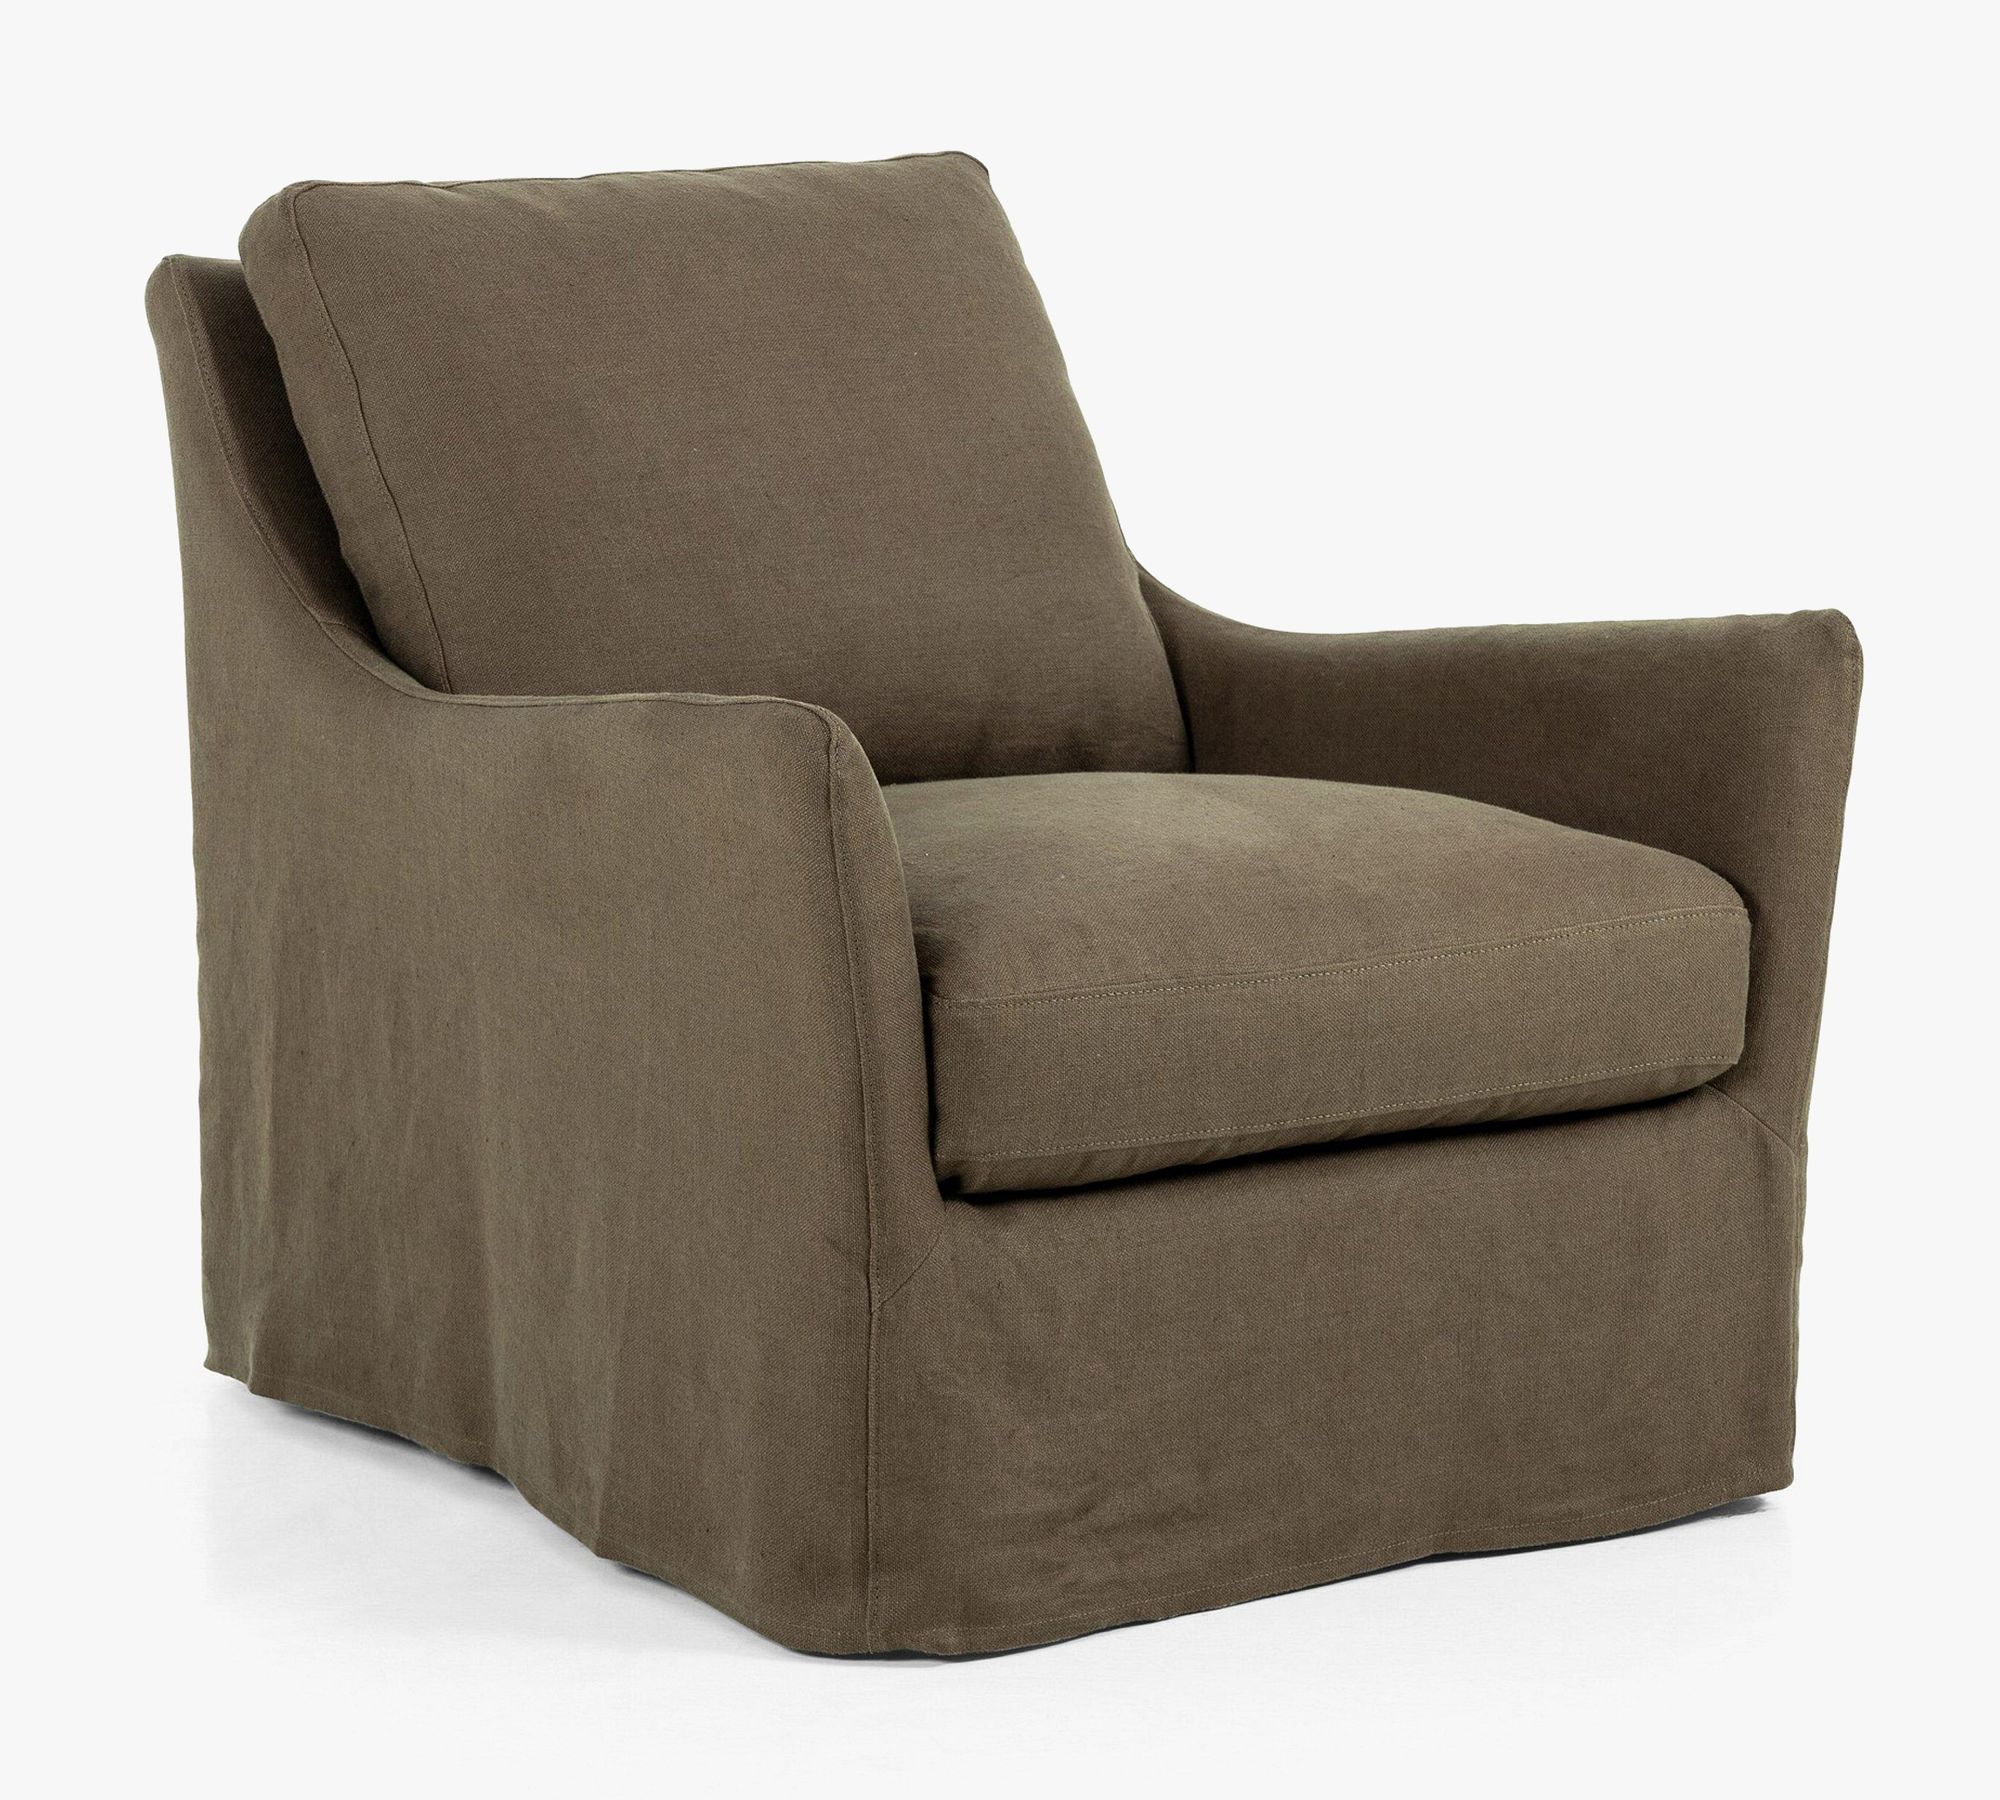 Chiara Slipcovered Swivel Chair